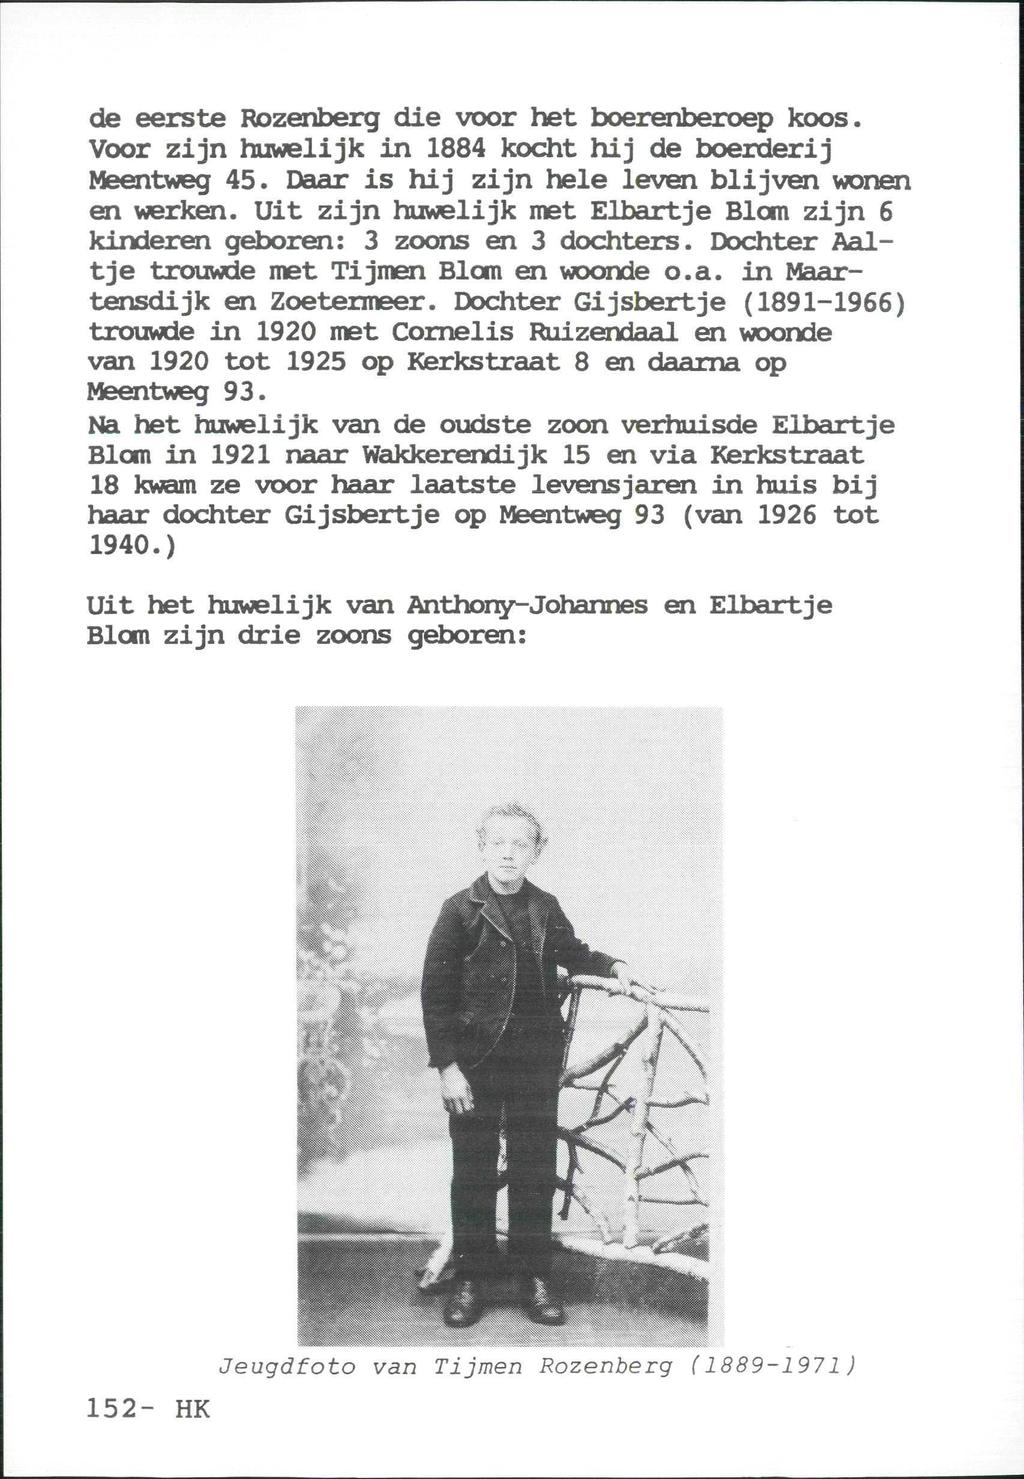 de eerste Rozenberg die voor het boerenberoep koos. Voor zijn huwelijk in 1884 kocht hij de boerderij Meentweg 45. Daar is hij zijn hele leven blijven wonen en werken.